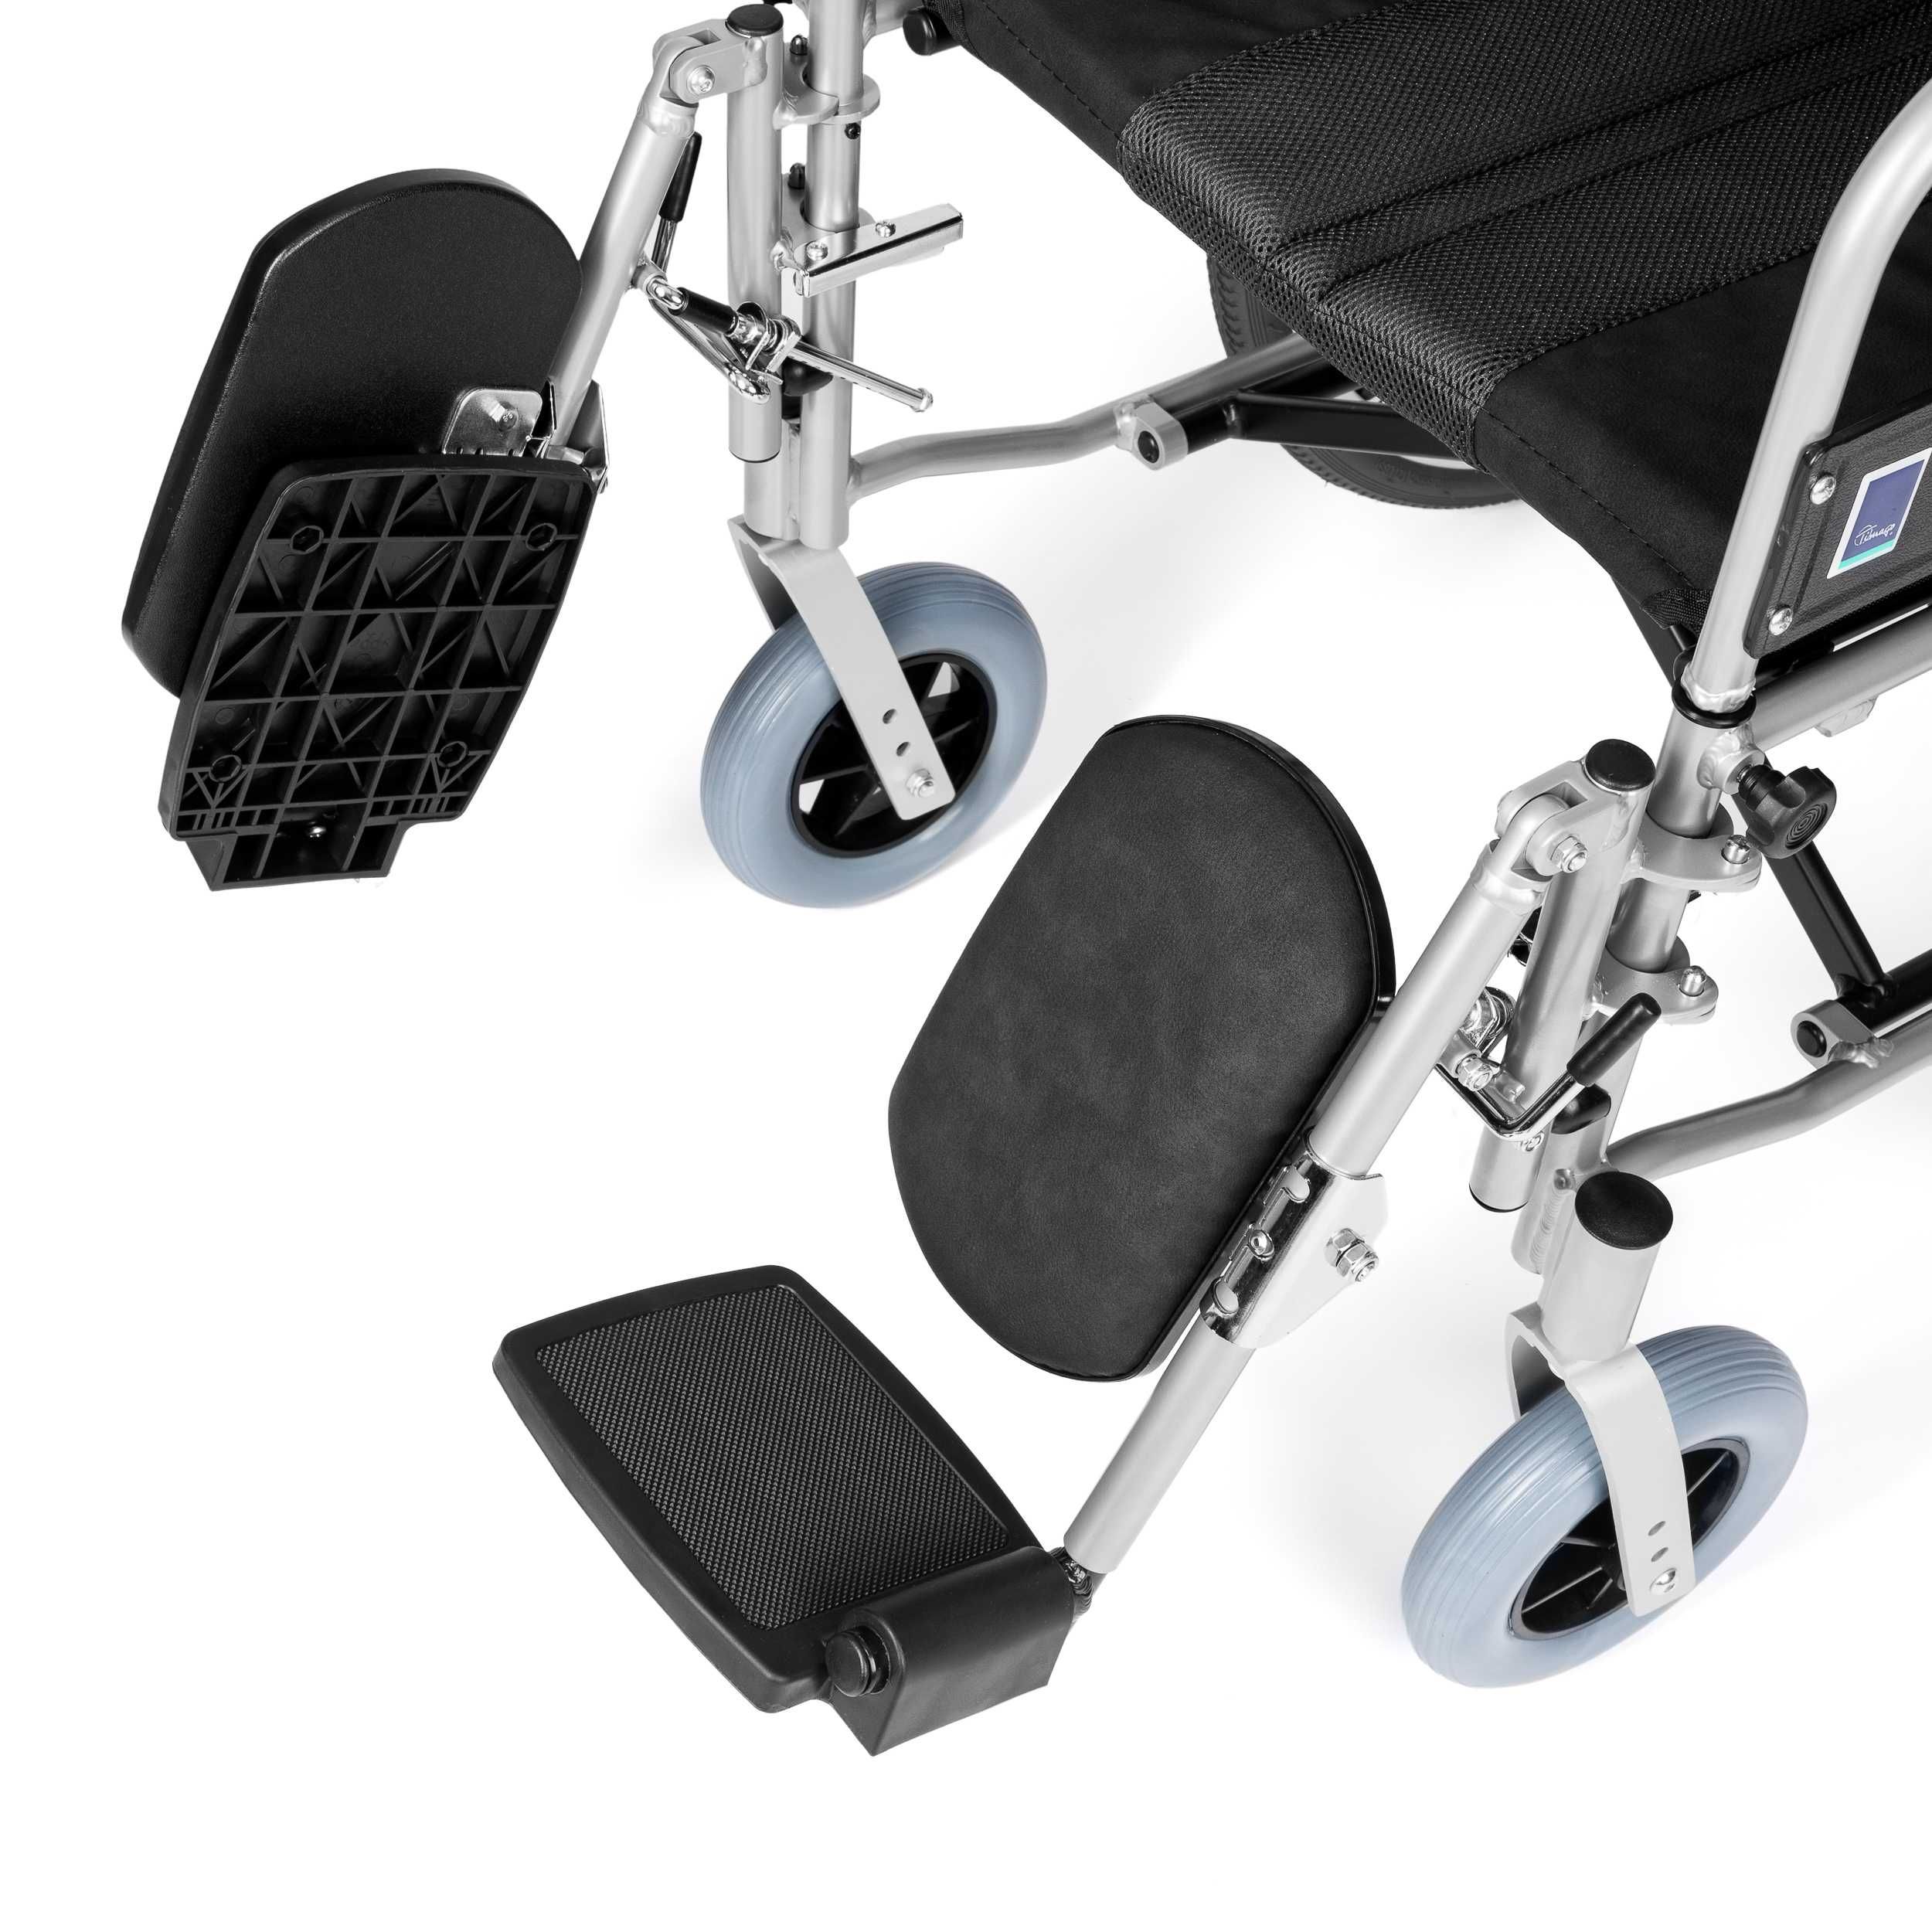 Aluminiowy wózek stabilizujący plecy i głowę 100% REFUNDACJA !!!